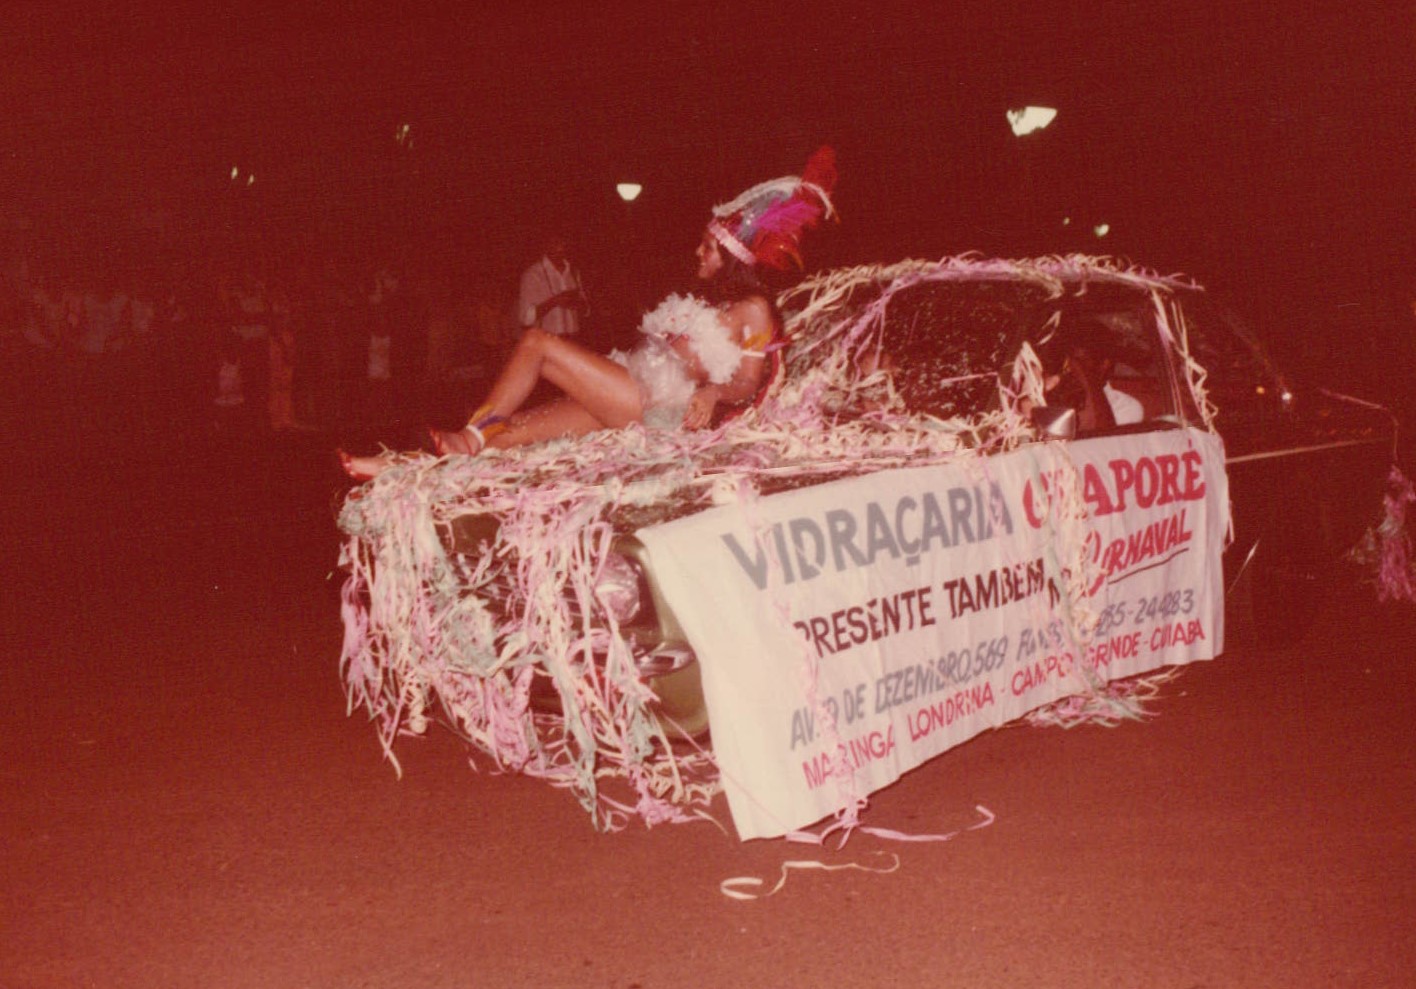 Carnaval, rainhas e seus carros alegóricos - Década de 1980